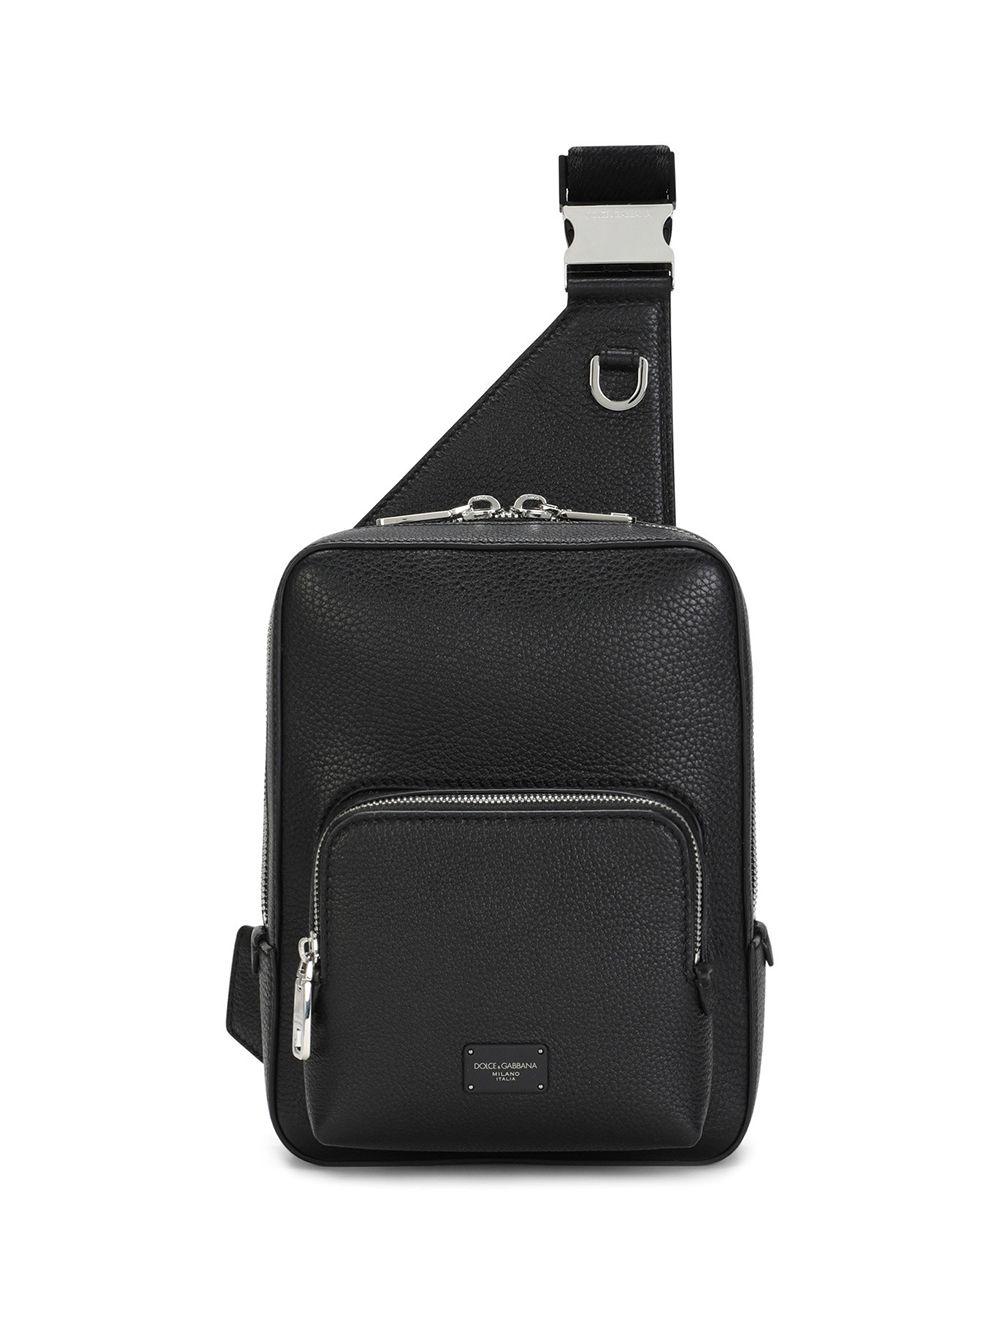 Dolce & Gabbana Leather Crossbody Backpack in Black for Men | Lyst Australia